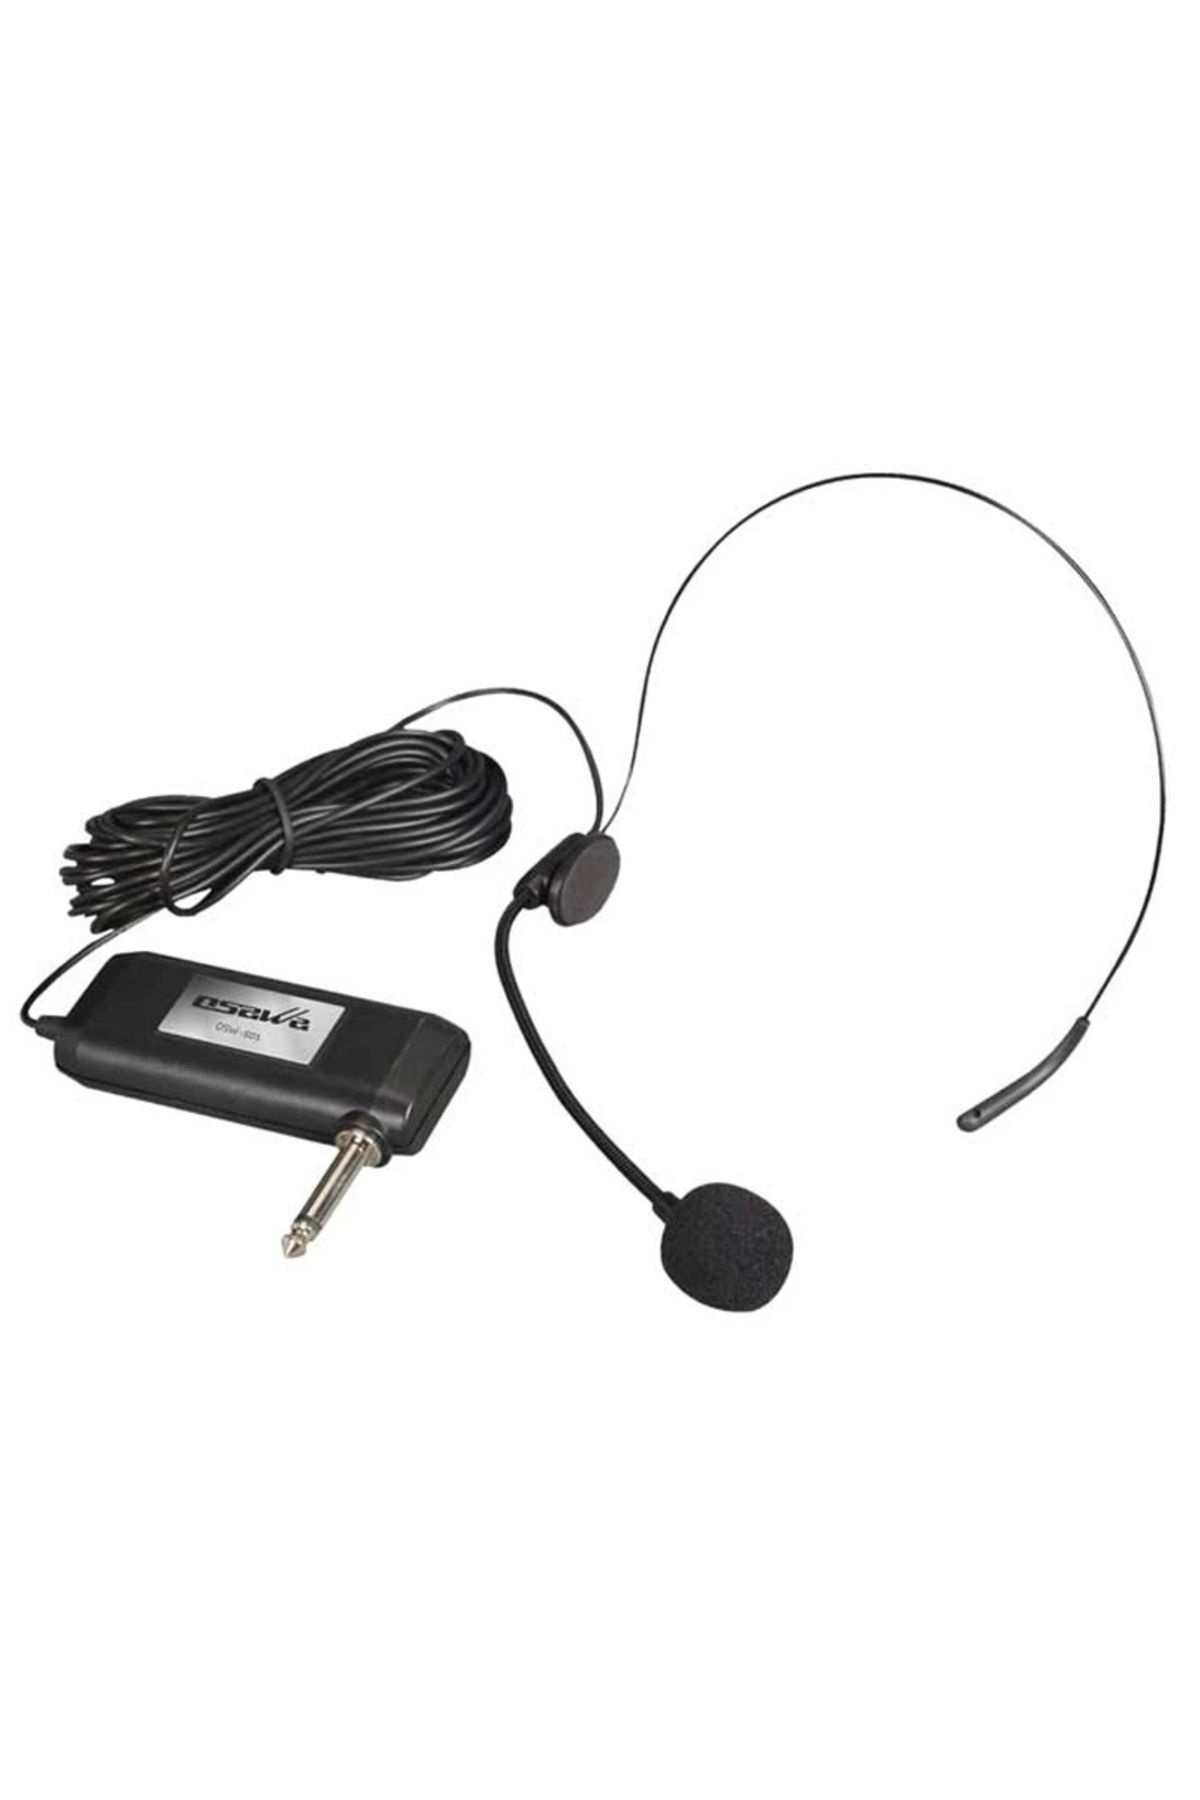 Epilons Osawa Osw-501 Kablolu Headset Mikrofon